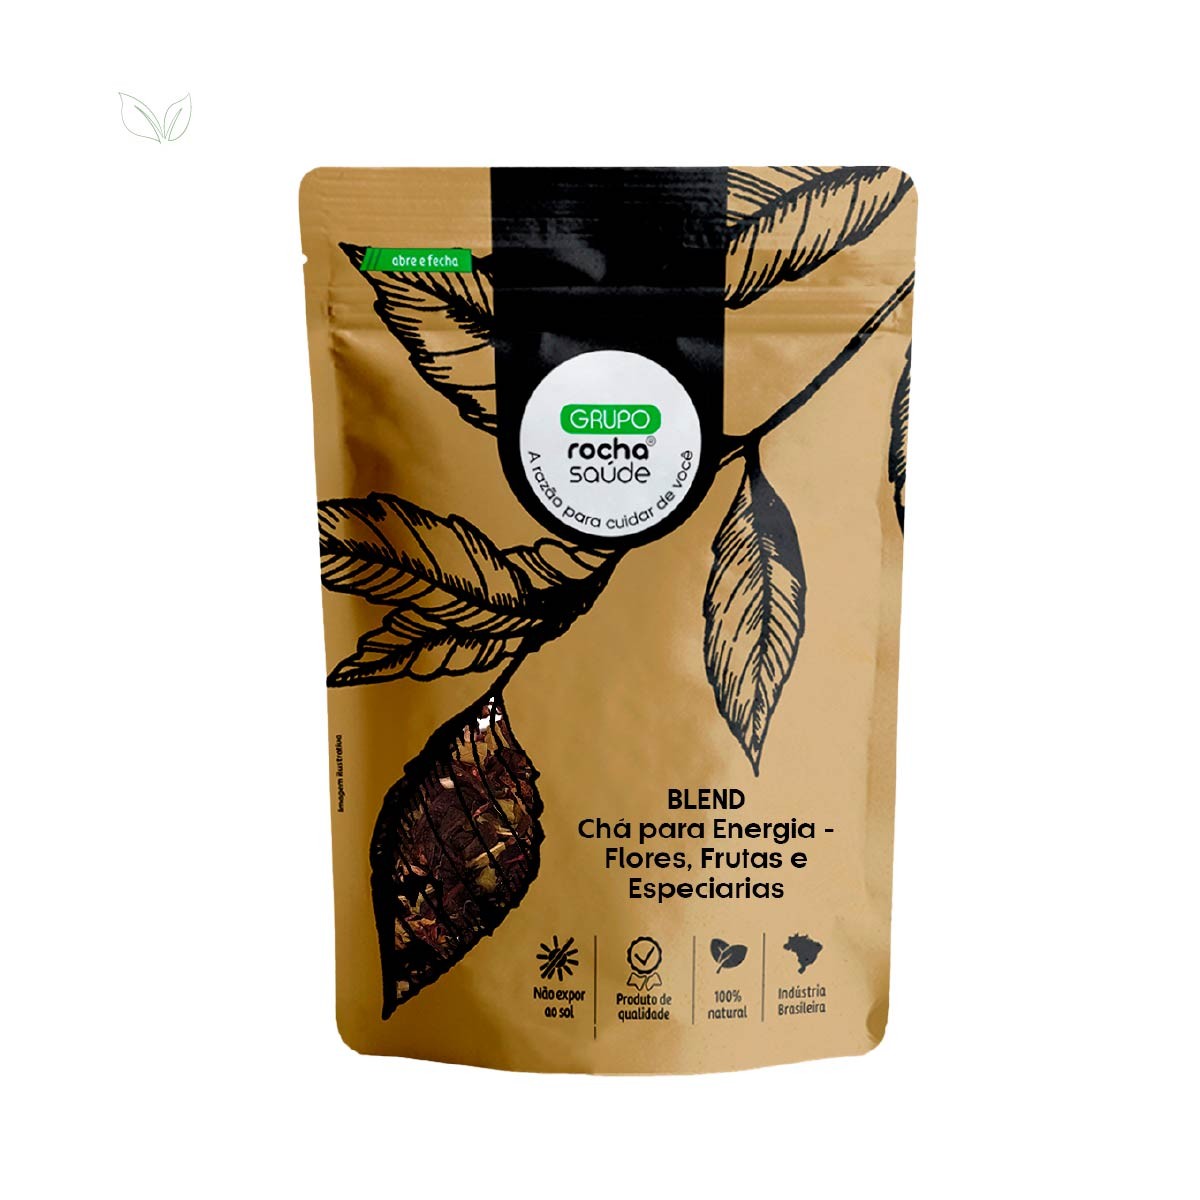 Blend - Chá para Energia - 100% Natural - Alta Qualidade